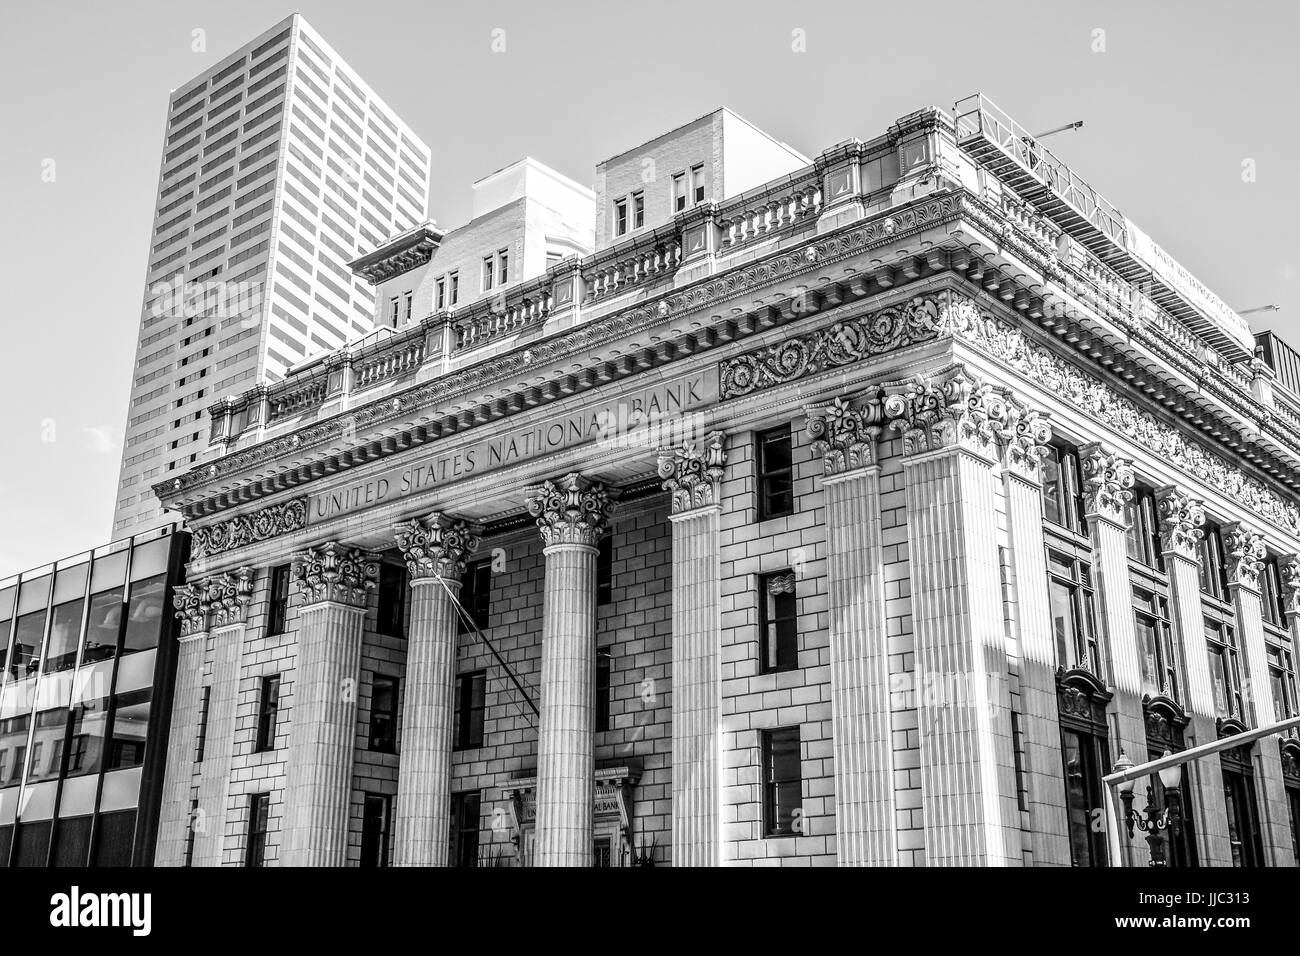 United States National Bank à Portland - Portland - OREGON - 15 avril, 2017 Banque D'Images